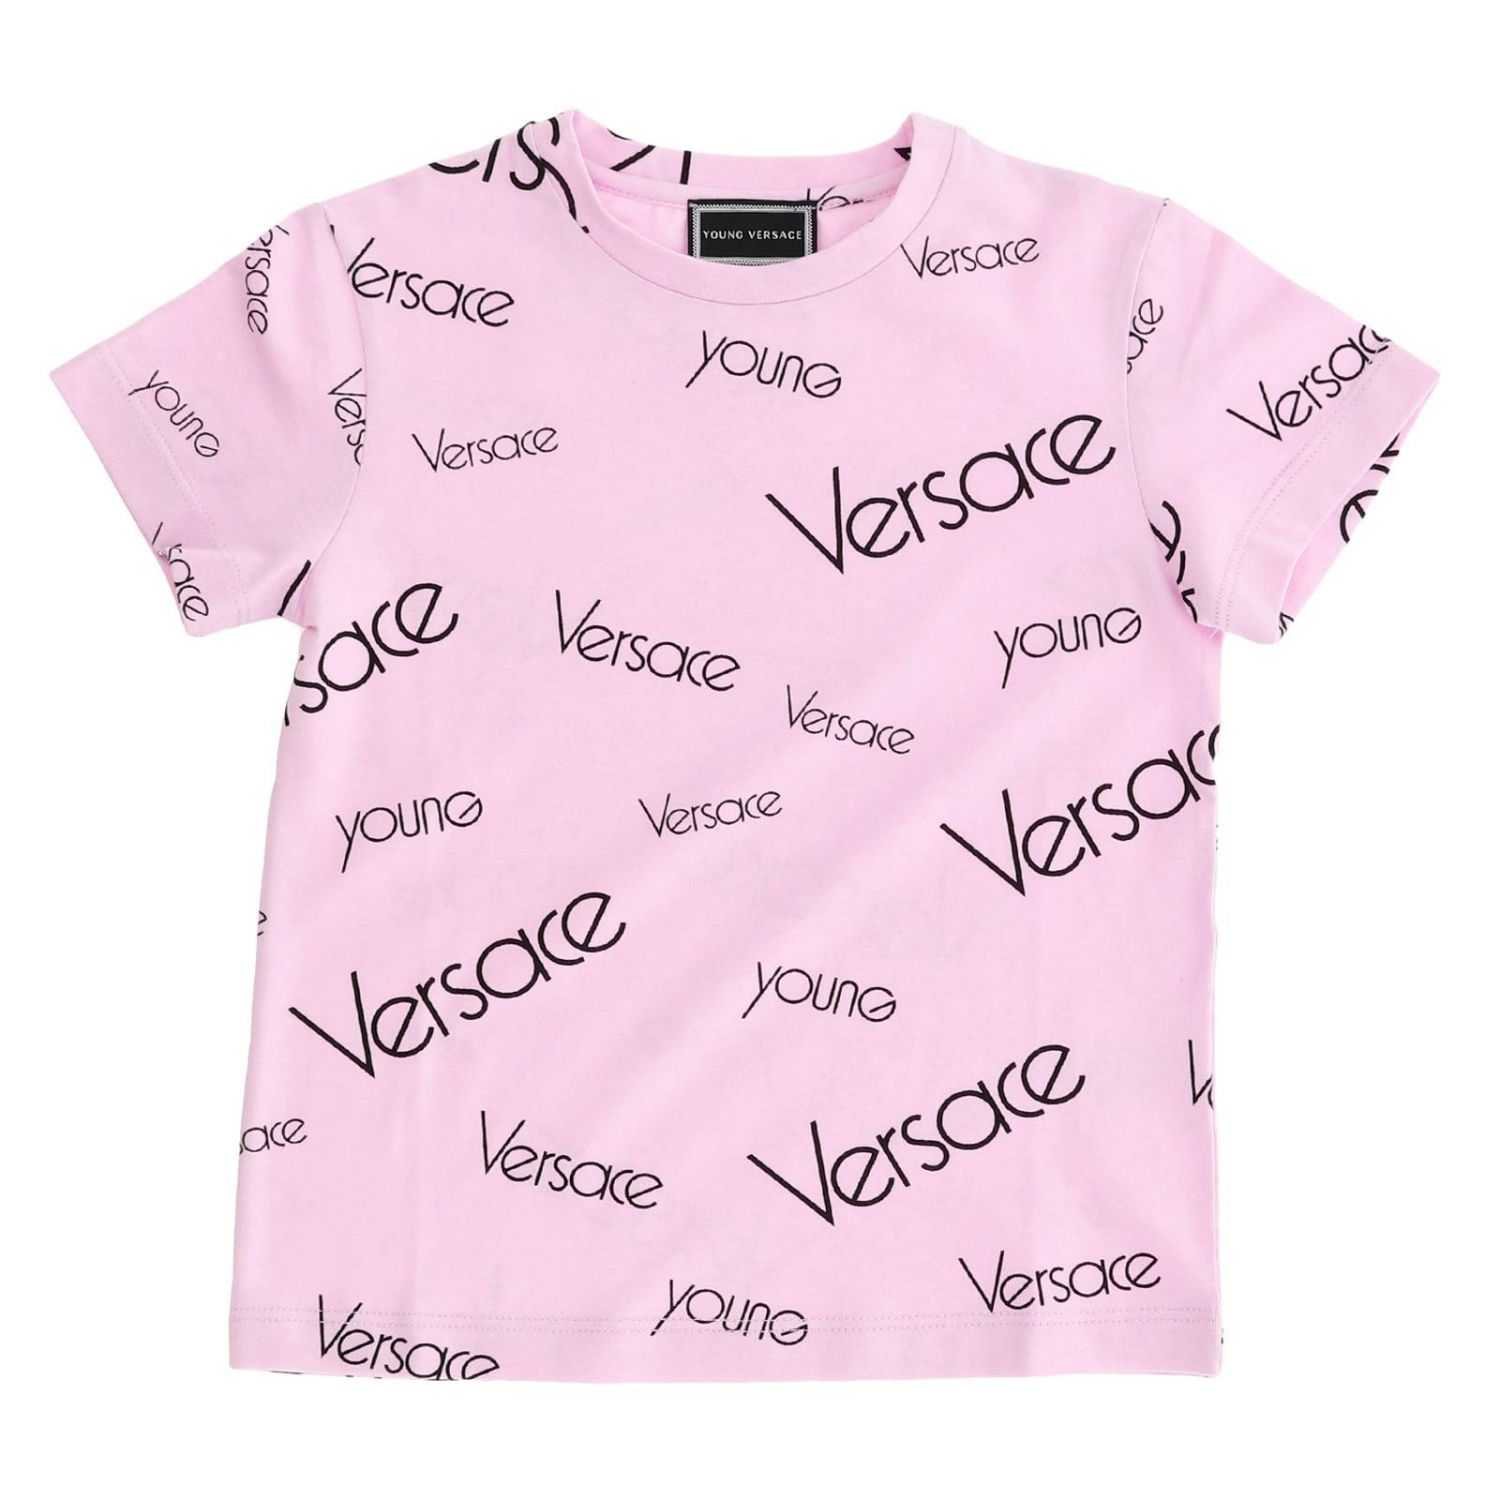 versace t shirt pink